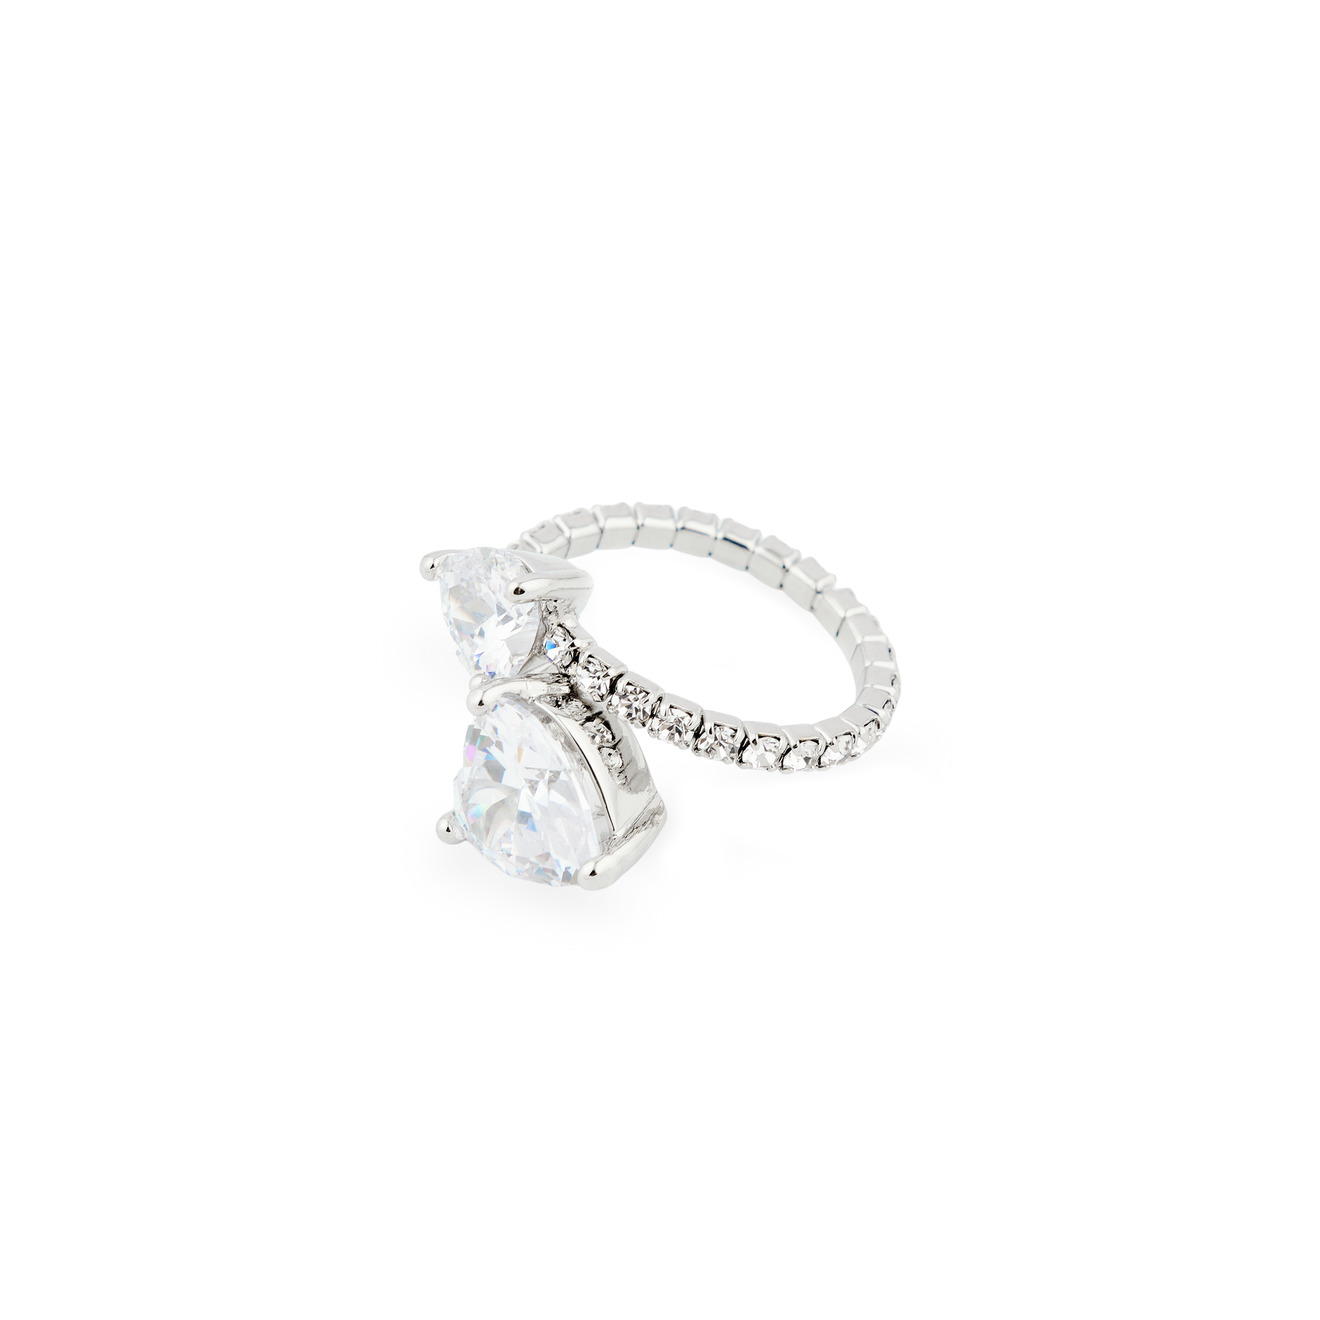 Herald Percy Серебристое кольцо из кристаллов с сердцами herald percy серебристое многоуровневое кольцо из белых и розовых кристаллов и жемчужин